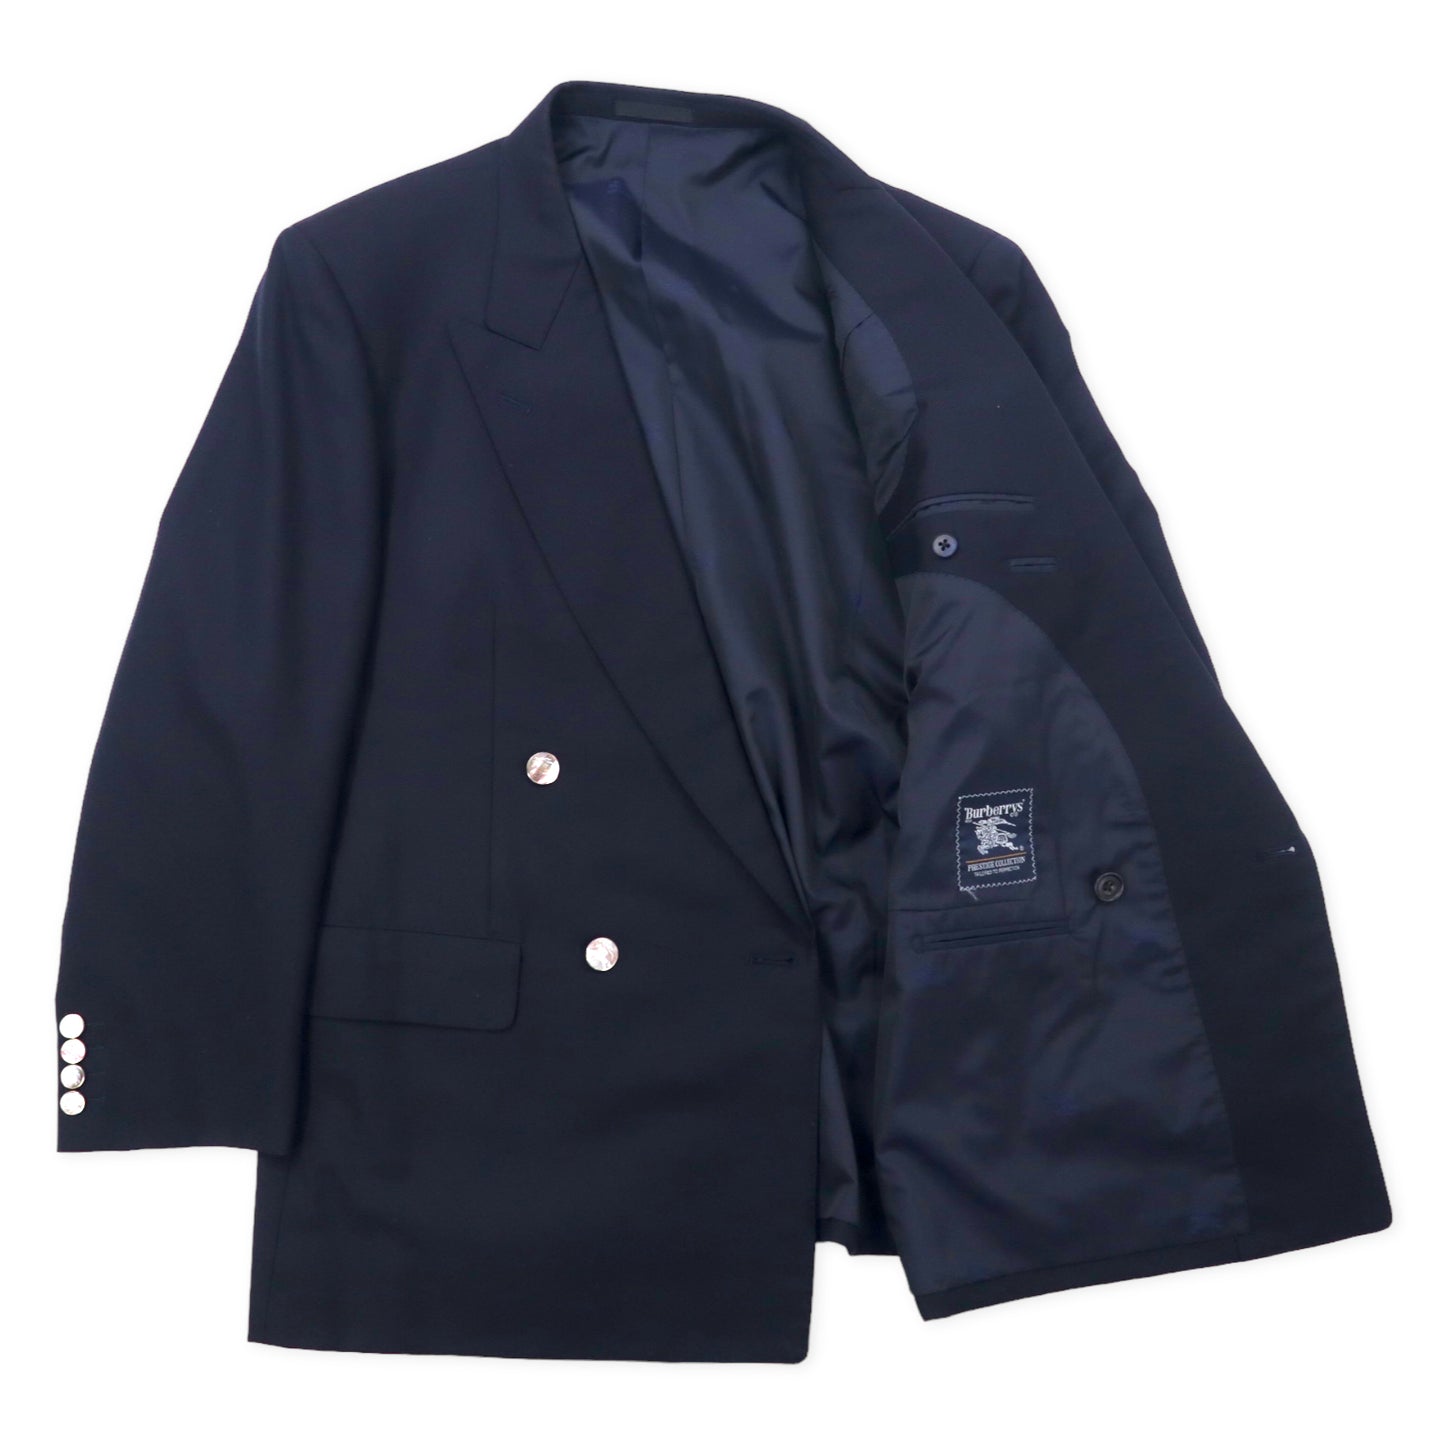 Burberrys オールド ダブル スーツ セットアップ 紺ブレ 41 ネイビー ウール カシミヤ混 ギャバジン 飾りボタン 日本製